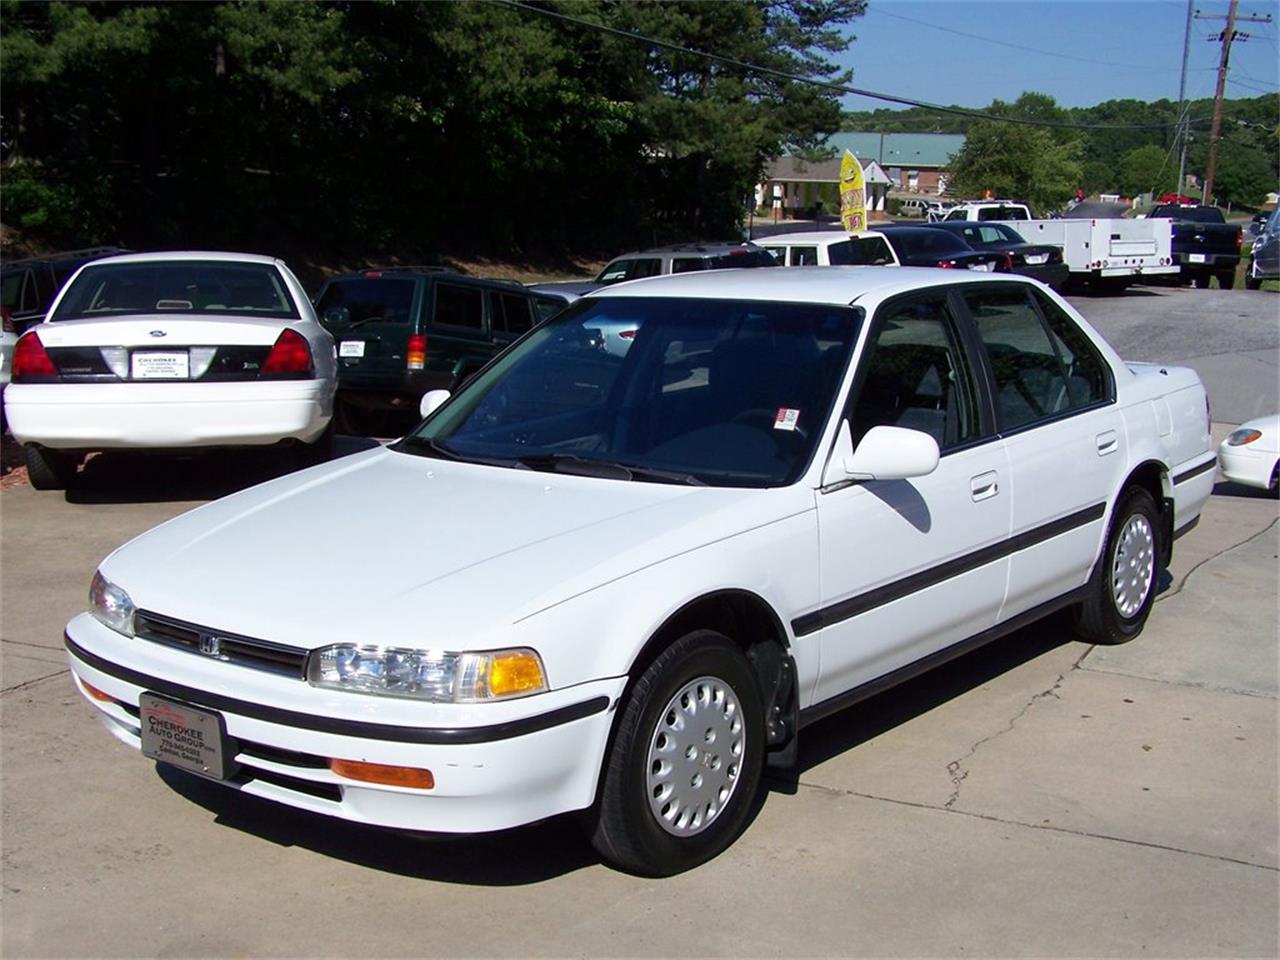 1992 Honda Accord for Sale | ClassicCars.com | CC-1060780